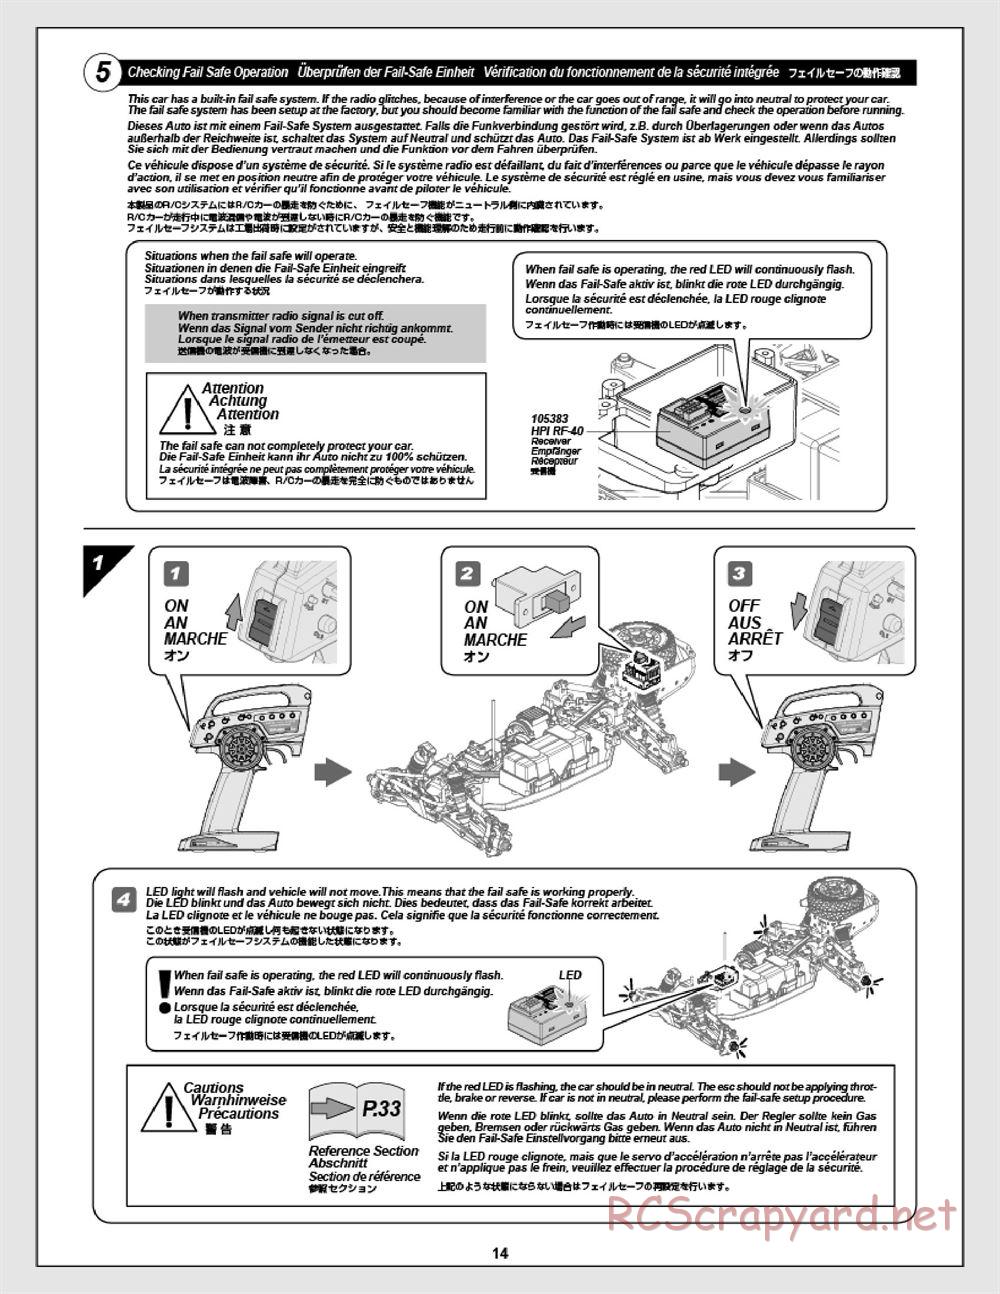 HPI - Apache C1 Flux - Manual - Page 14